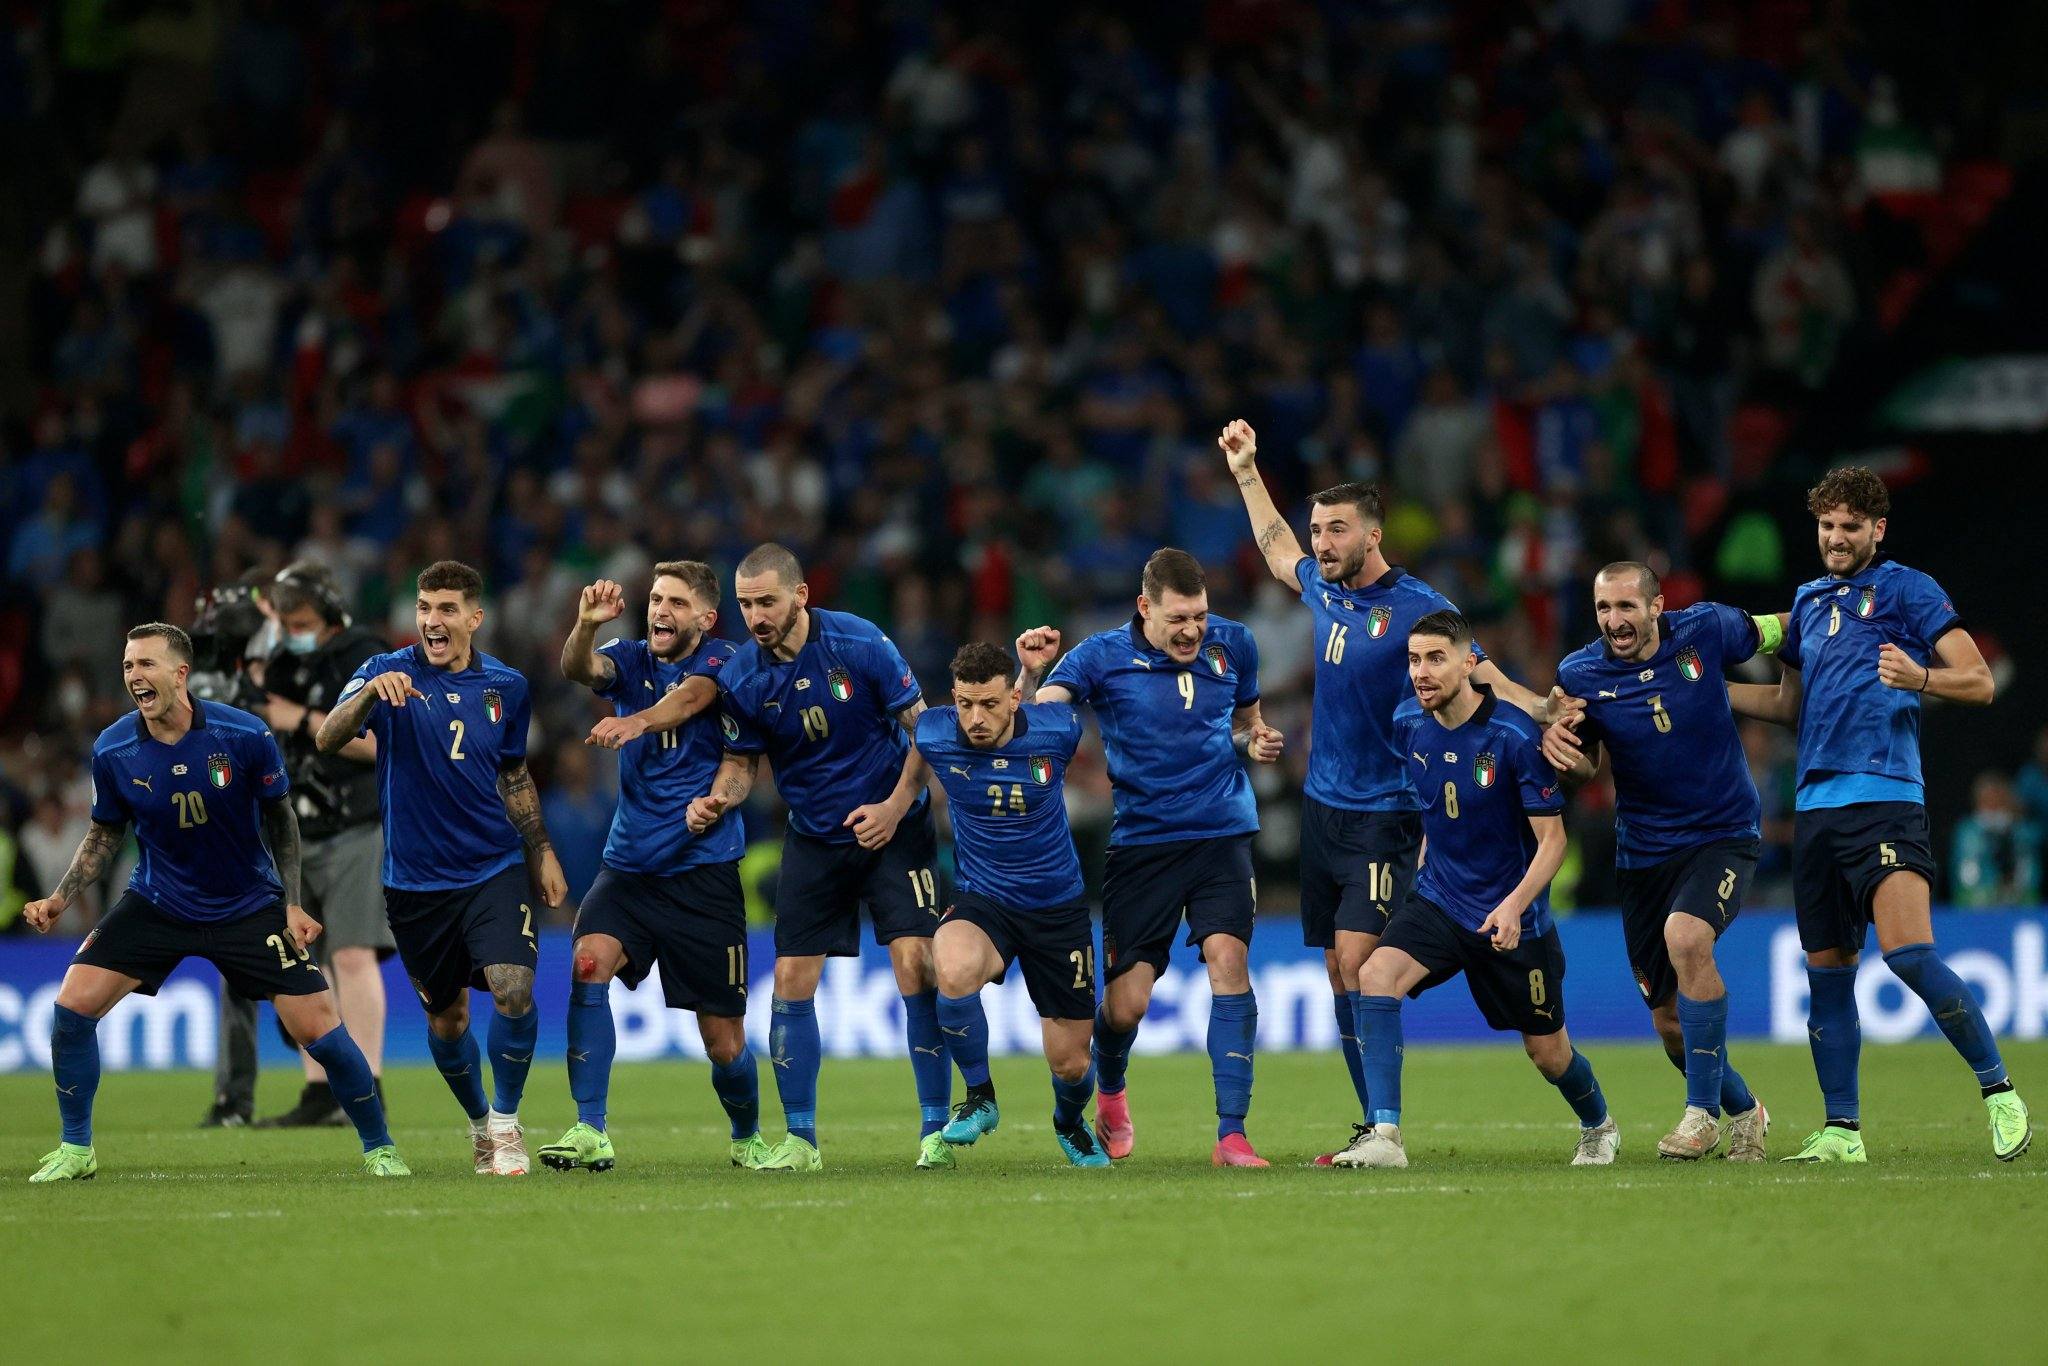 Tundukkan Inggris Lewat Adu Penalti, Italia Juara Euro 2020